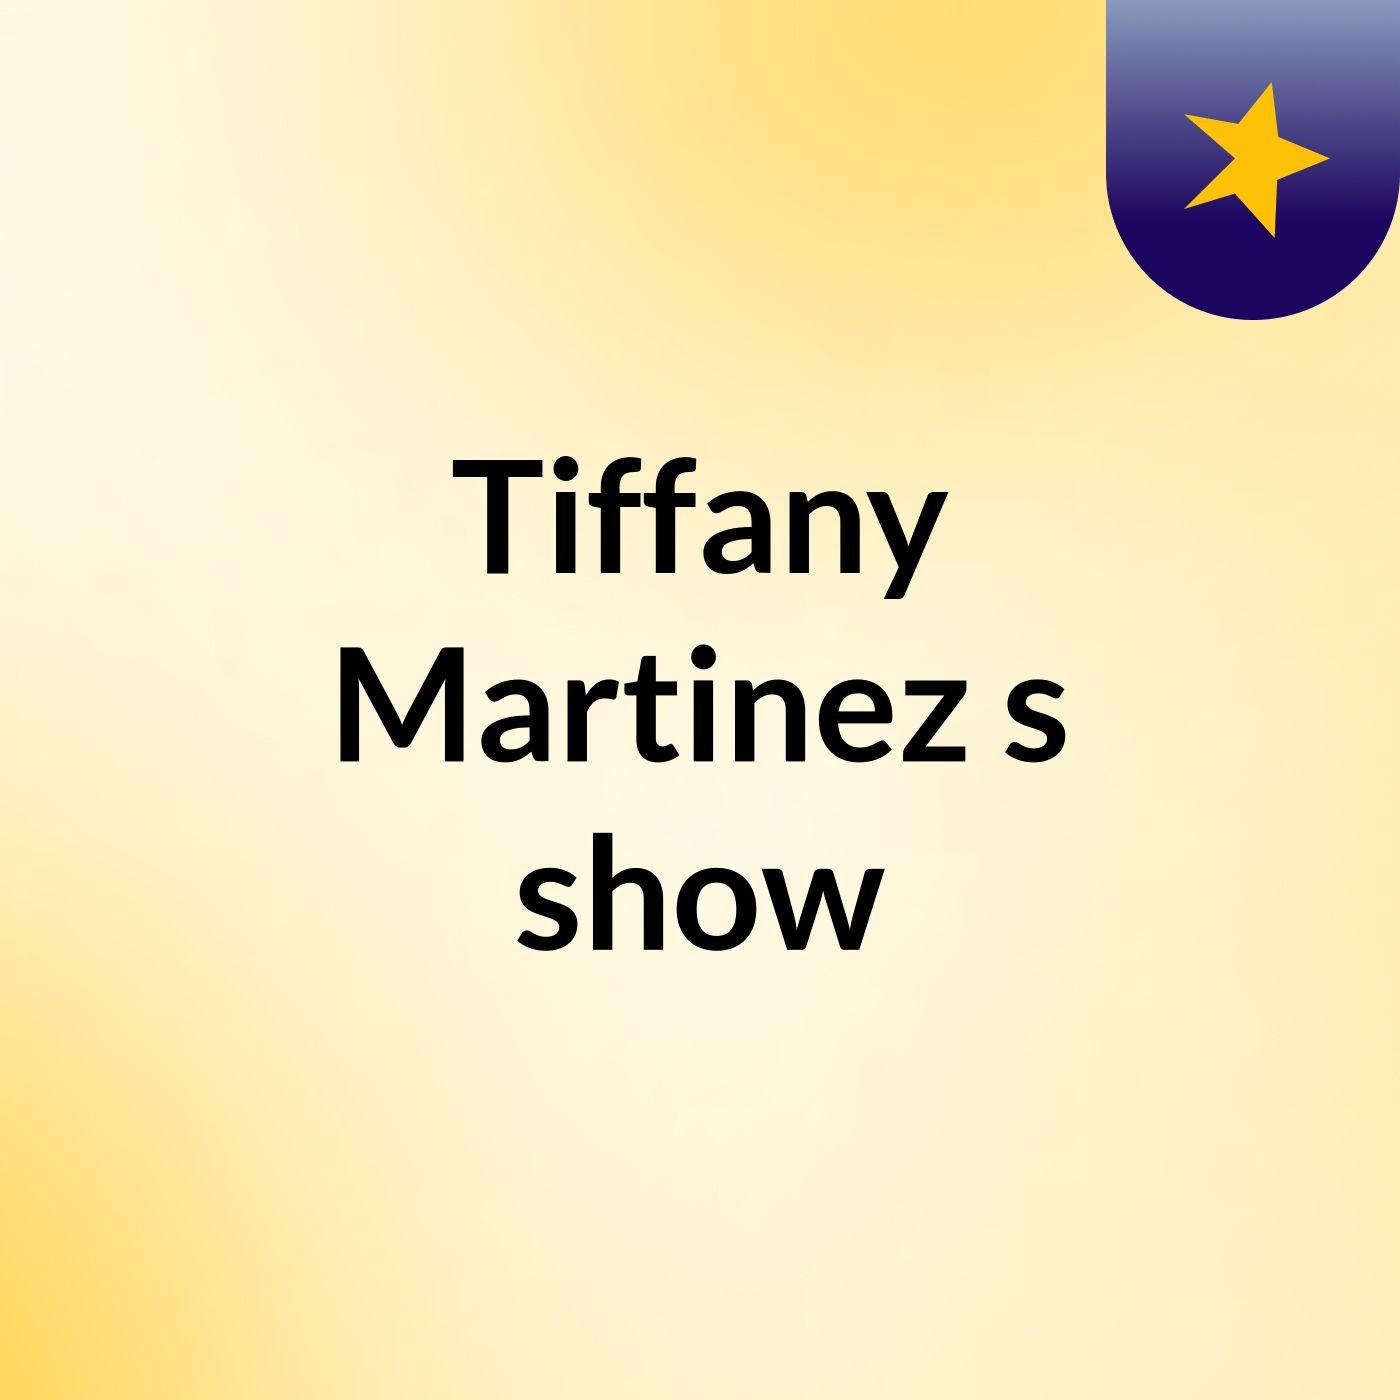 Tiffany Martinez's show